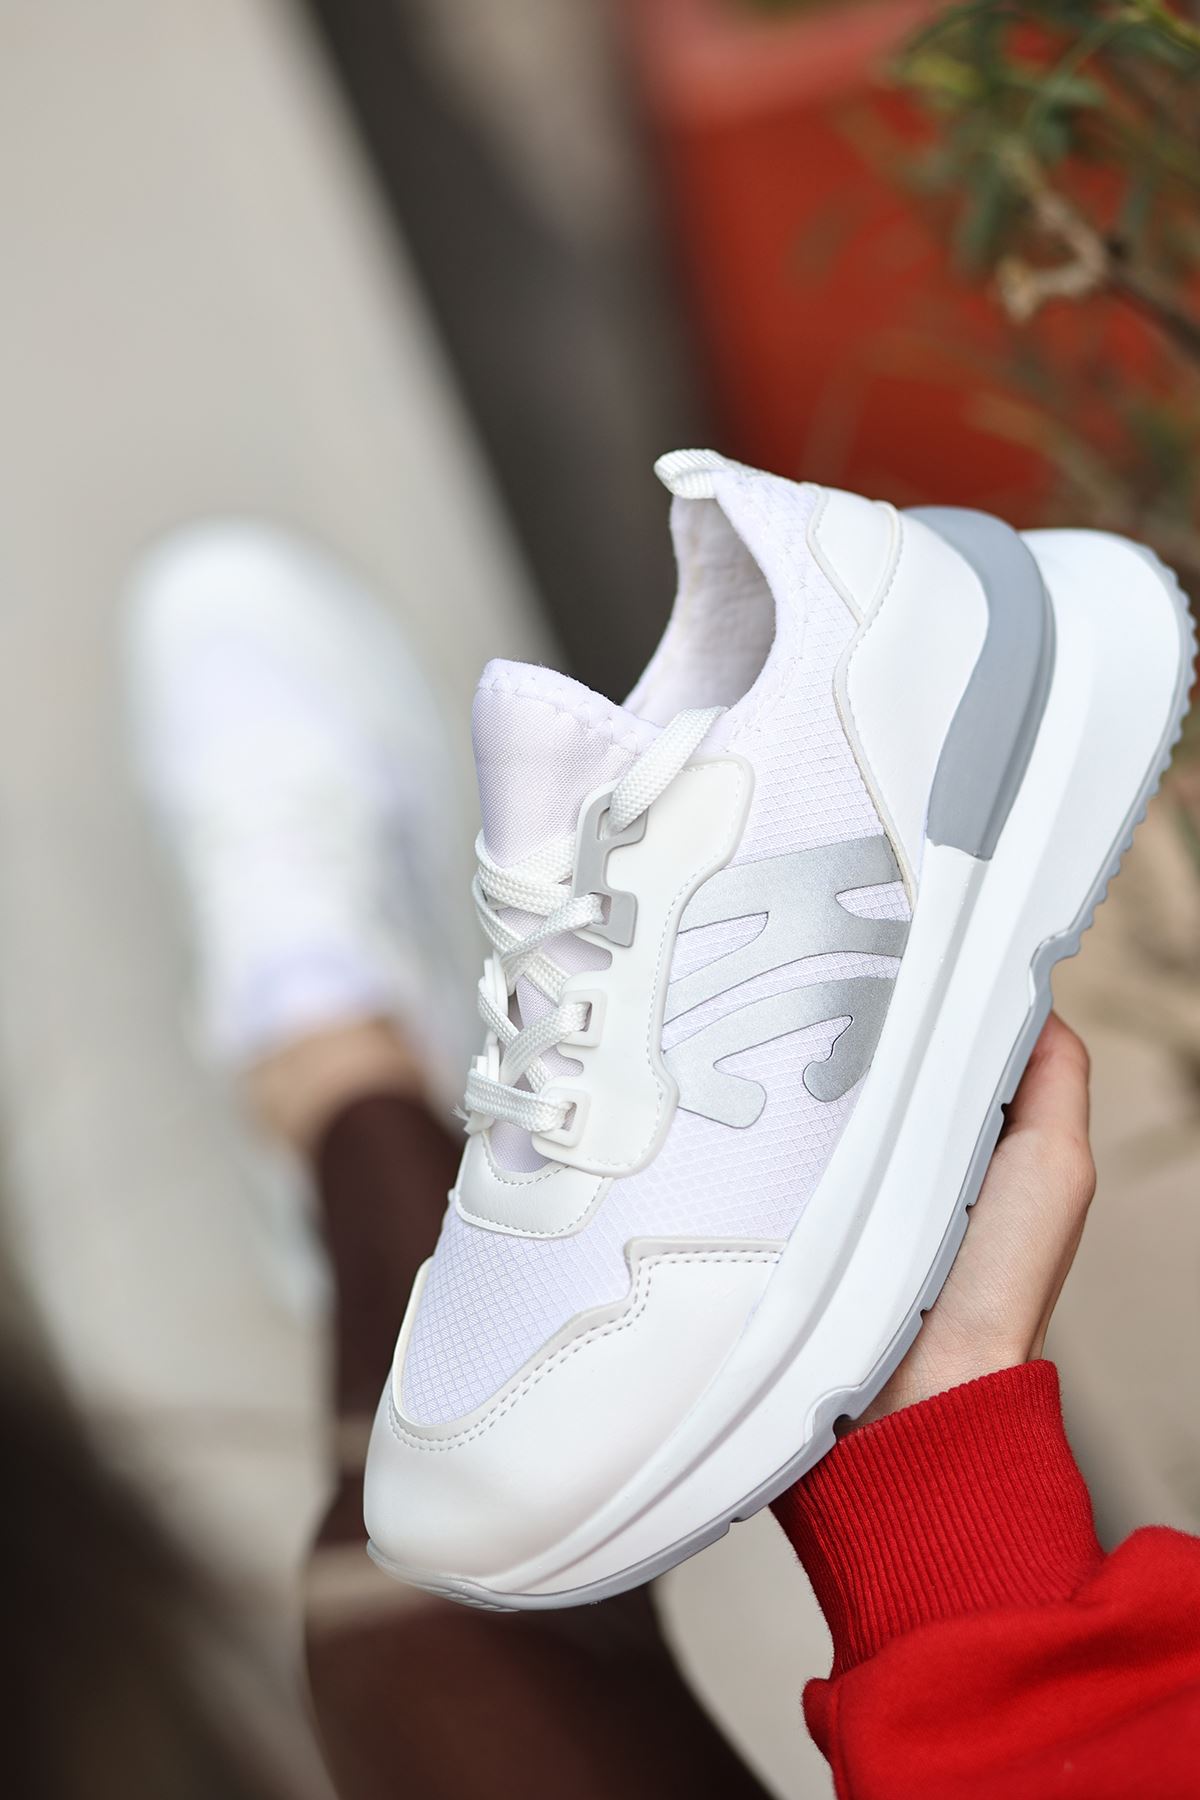 Salamanca Mat Deri Fileli Bağcıklı Kadın Sneakers Spor Ayakkabı Beyaz